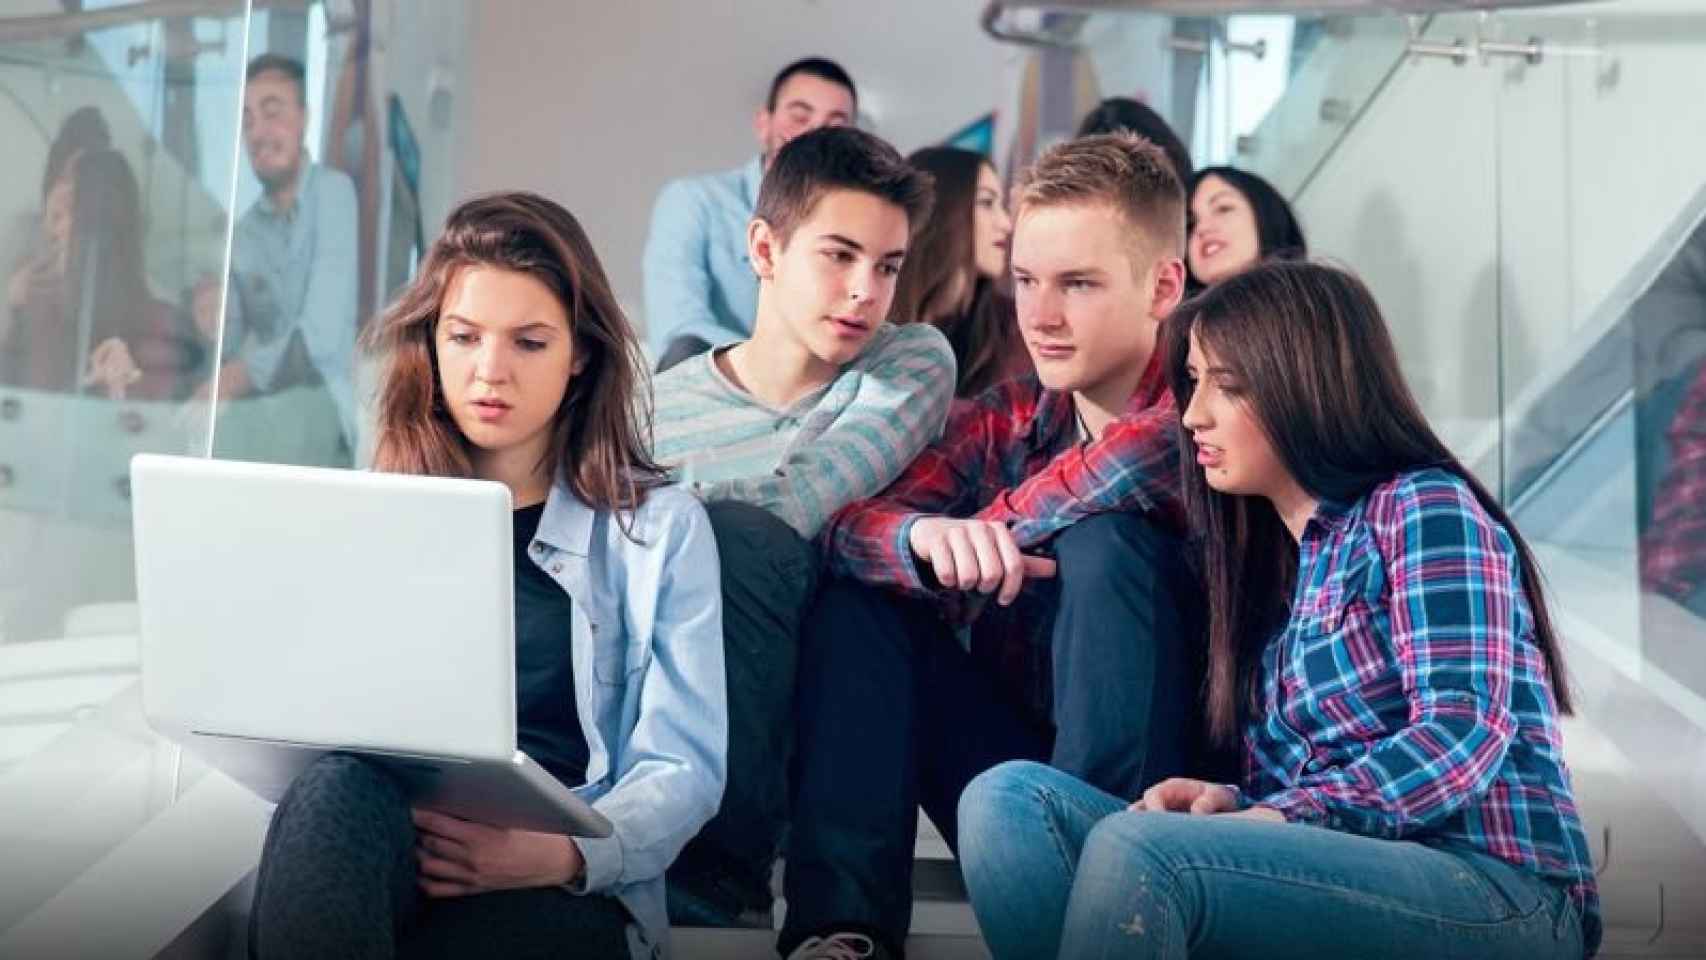 Un grupo de adolescentes miran la pantalla de un ordenador.